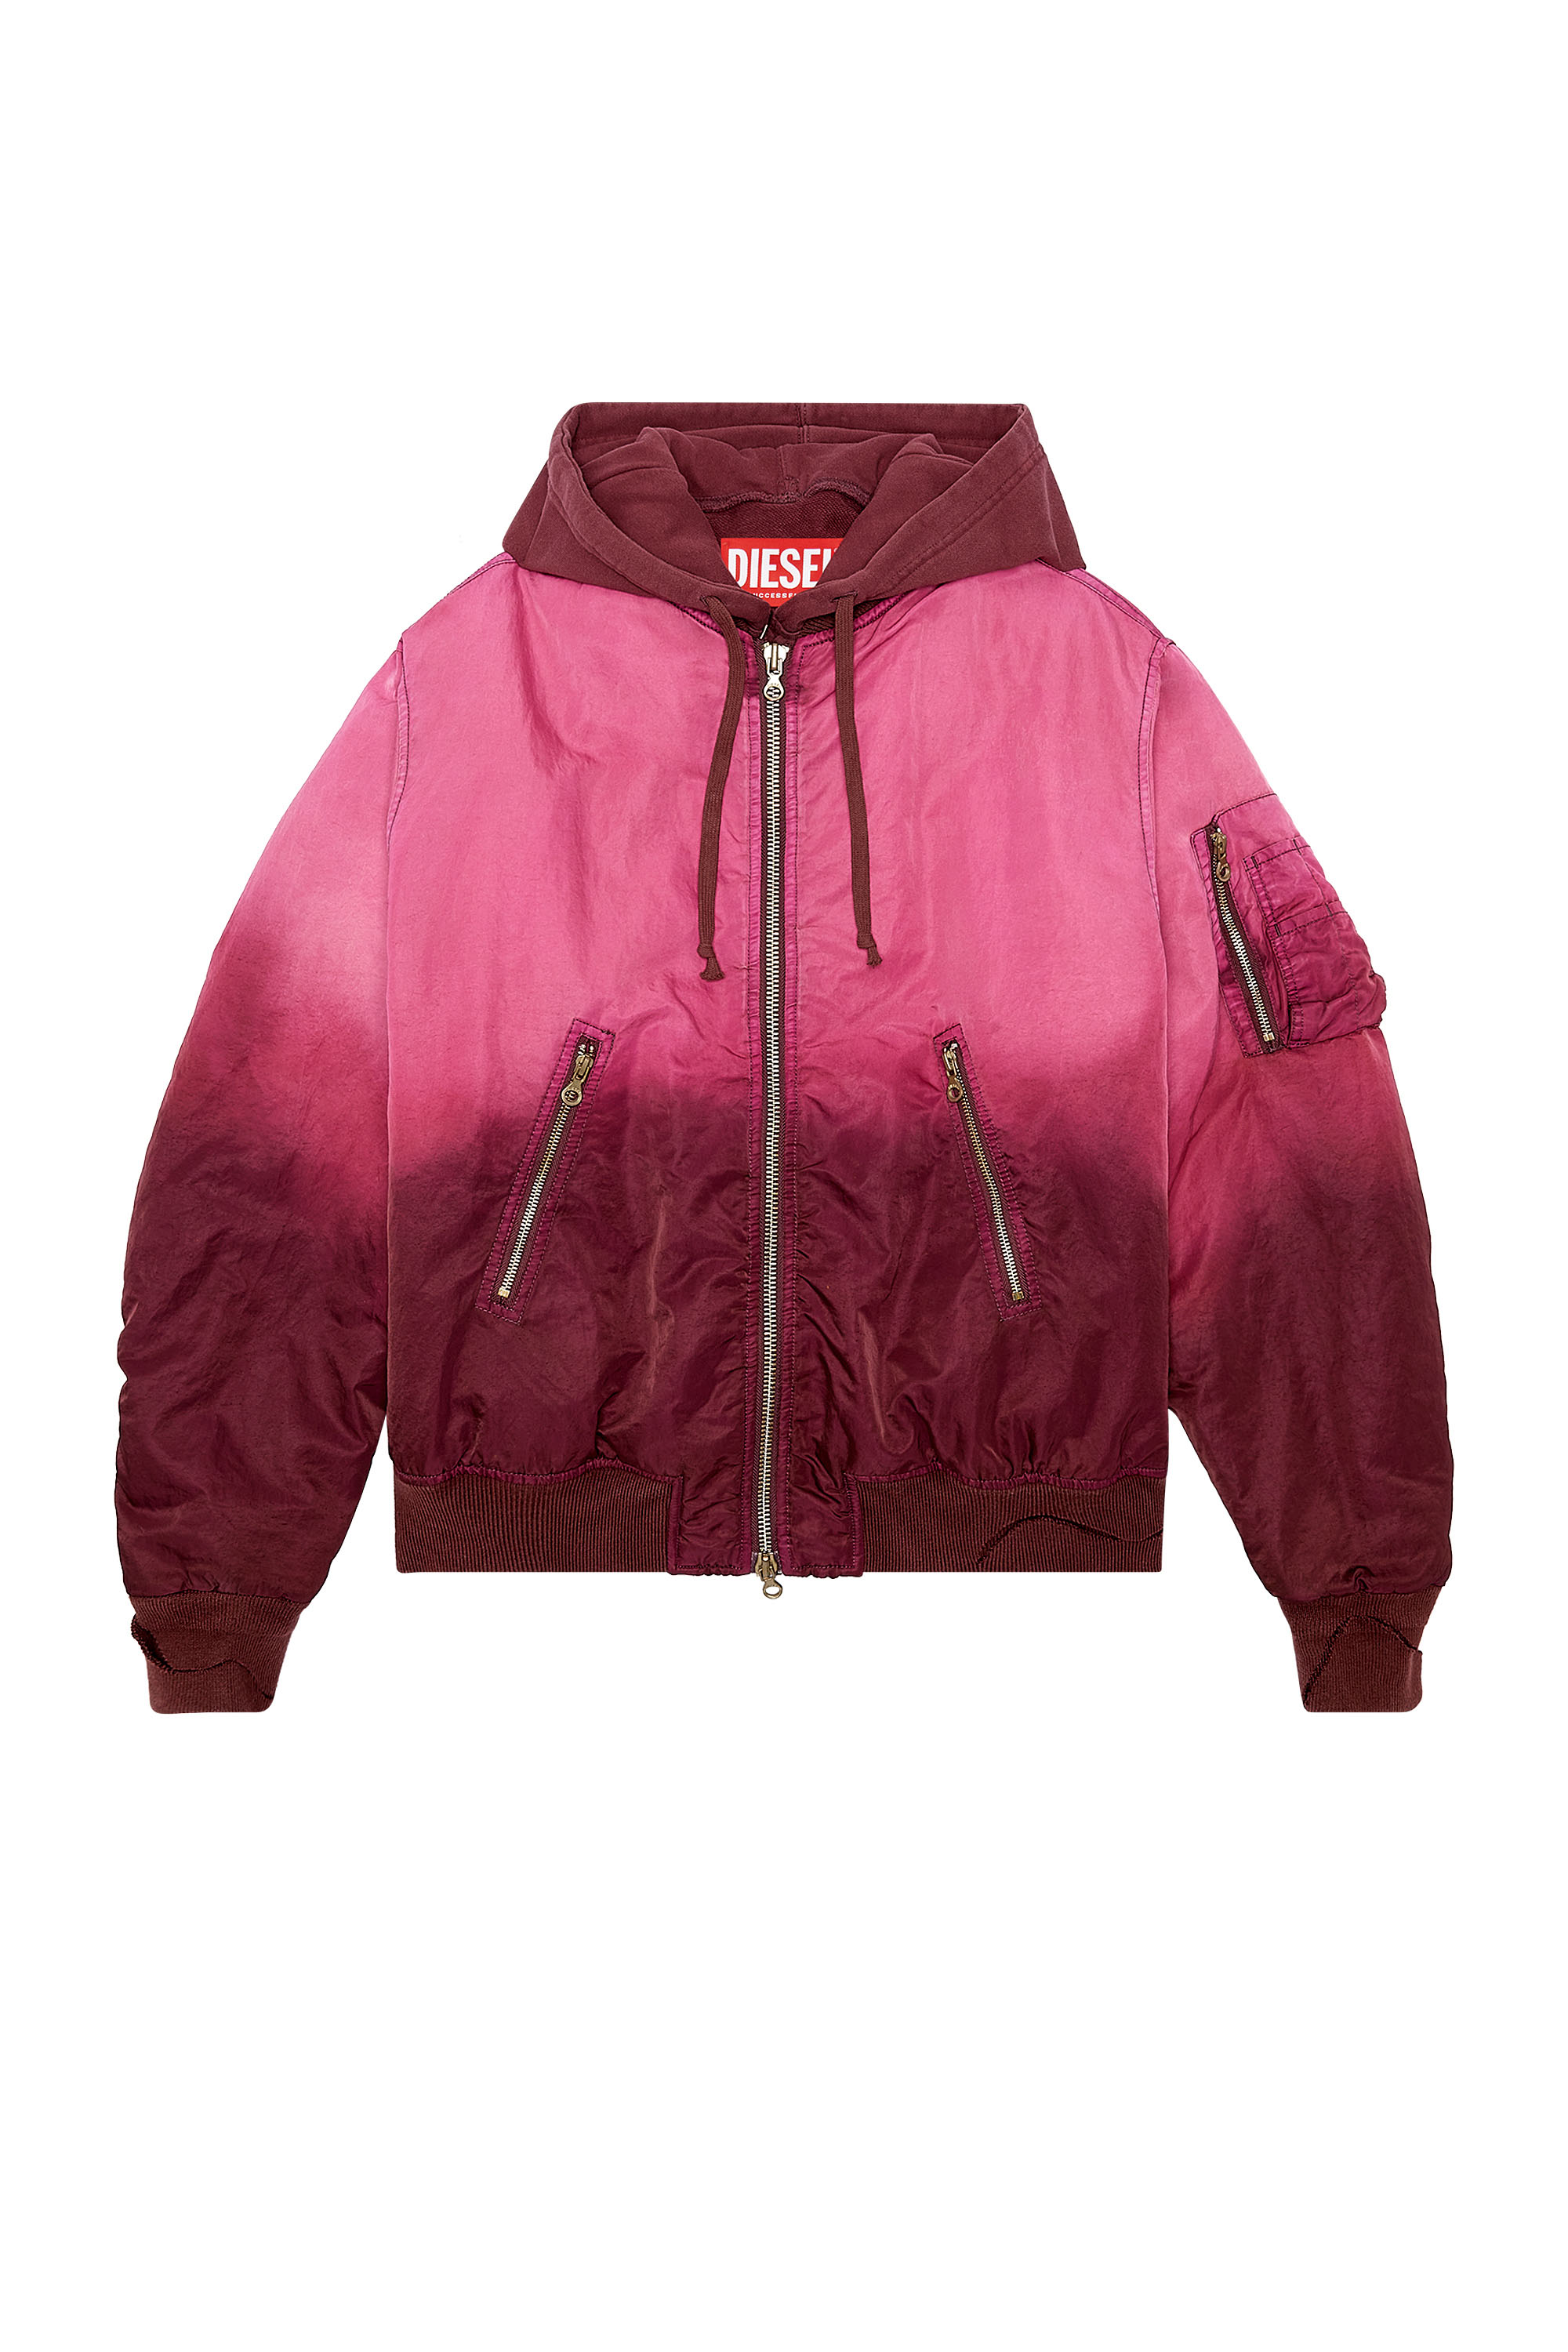 G-KAMILA, Hot pink - Jackets